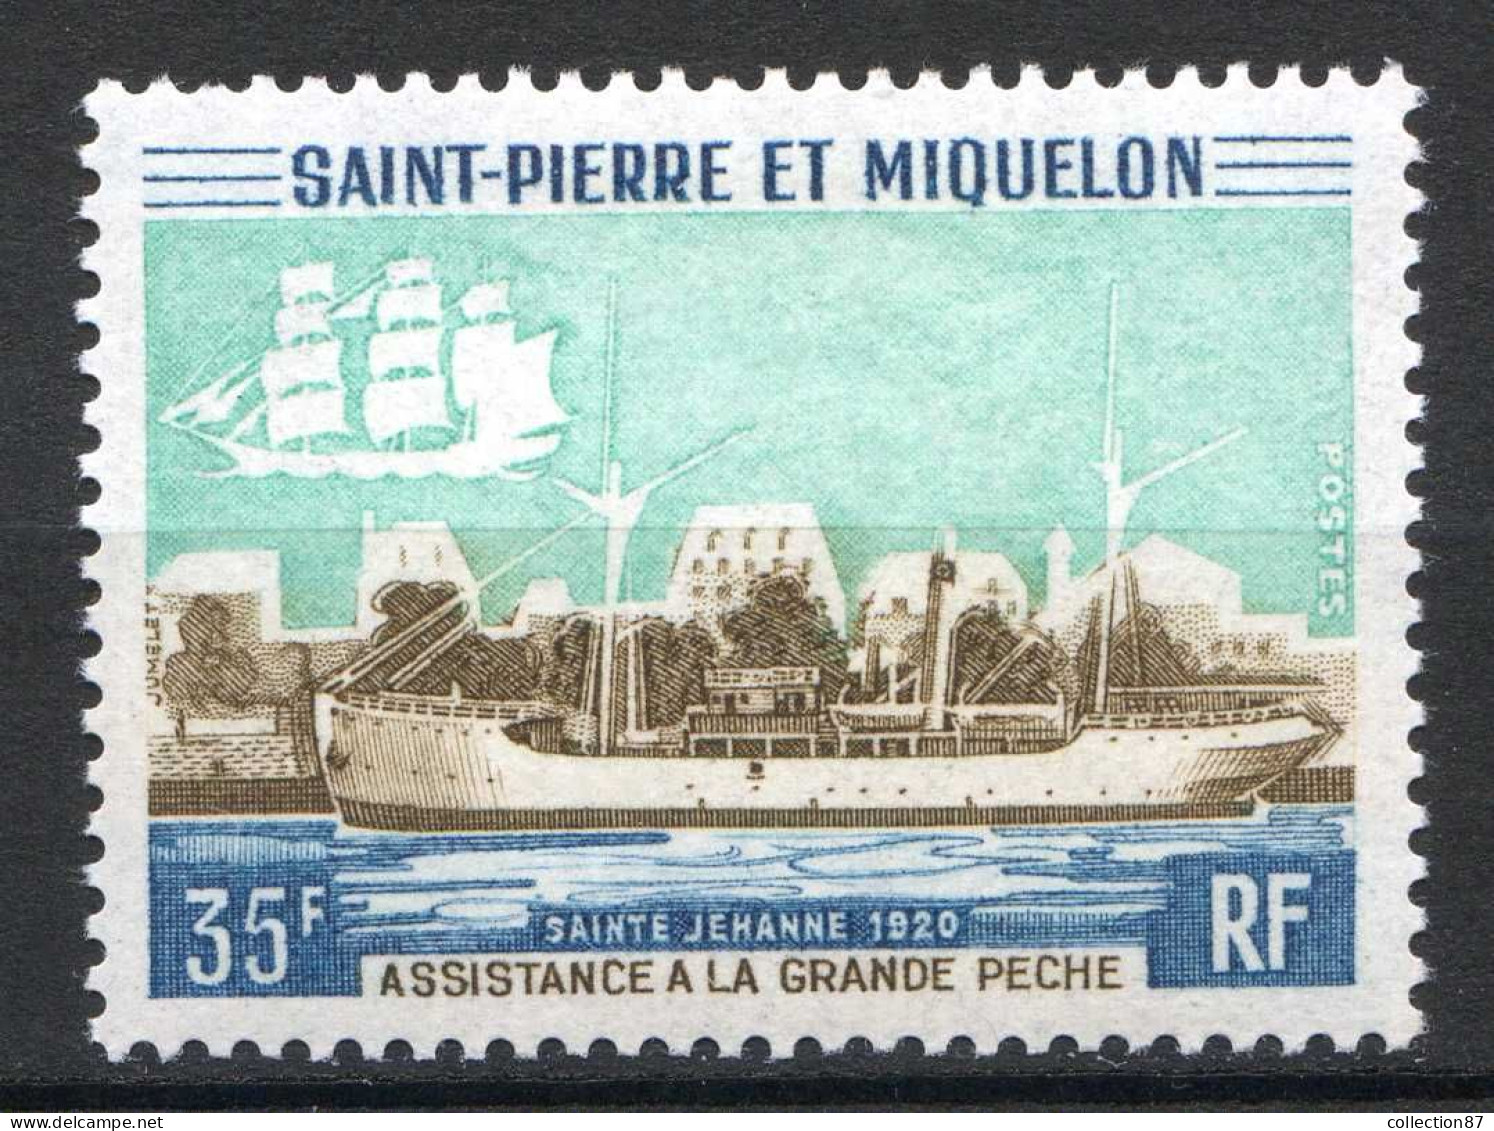 Réf 085 > SAINT PIERRE Et MIQUELON < N° 411 * < Neuf Ch -- MH * --- > Bateau De Peche Jehanne - Unused Stamps